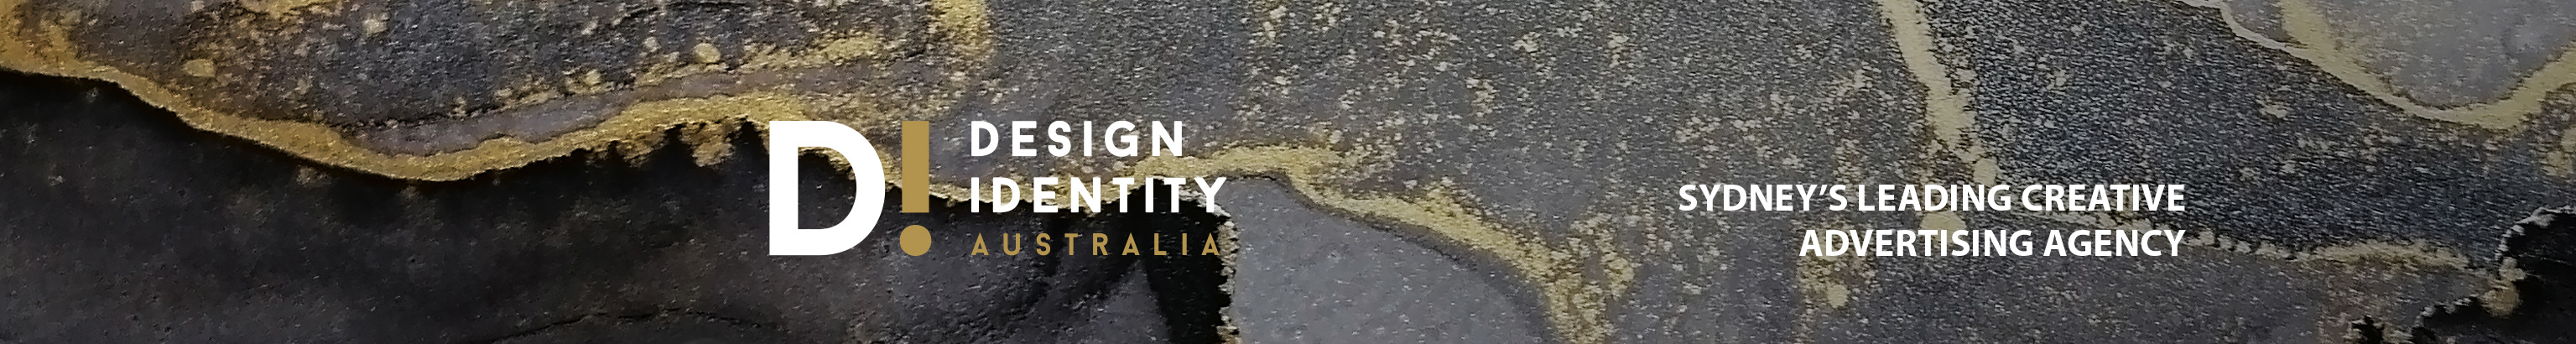 Design Identity Australia's profile banner